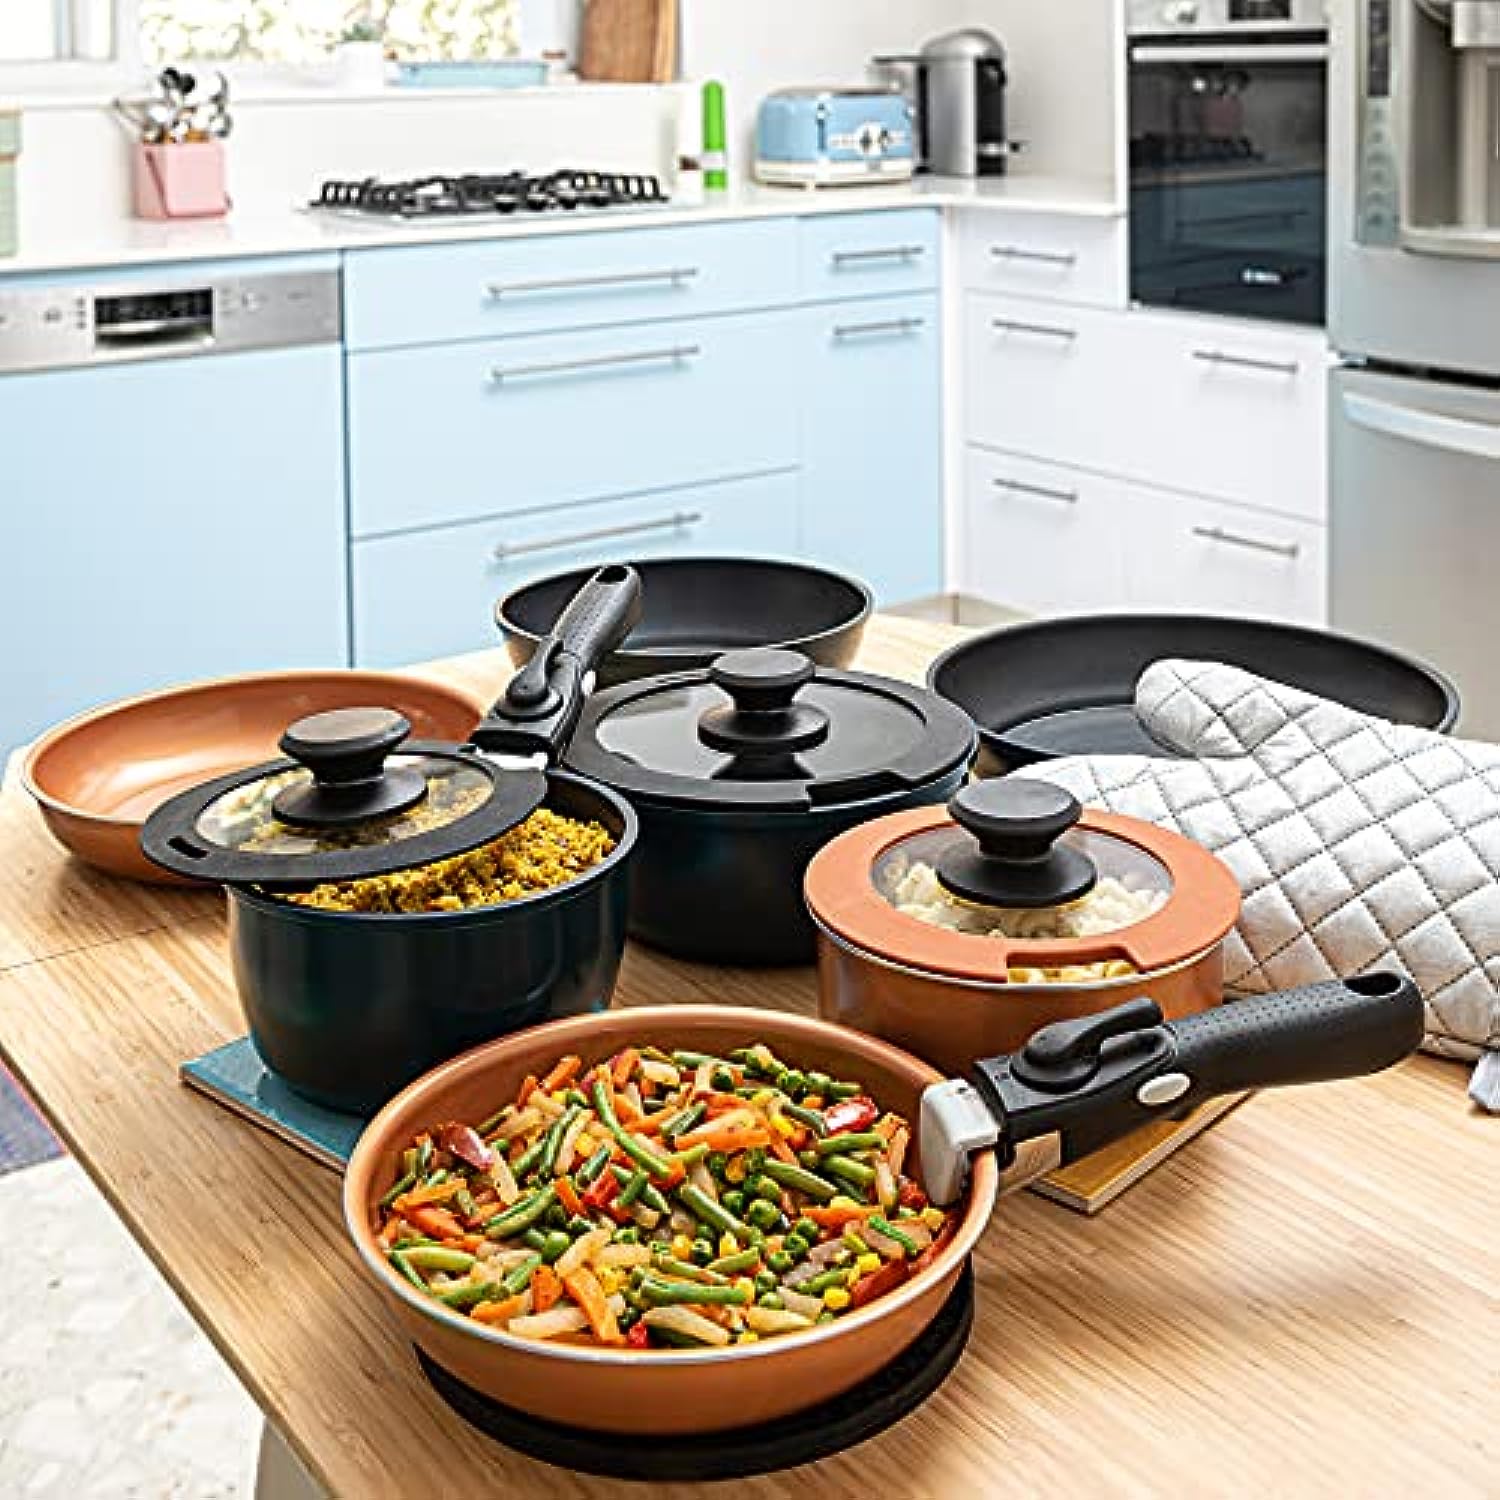 16 Pieces Kitchen Removable Handle Cookware Sets, Stackable Pots